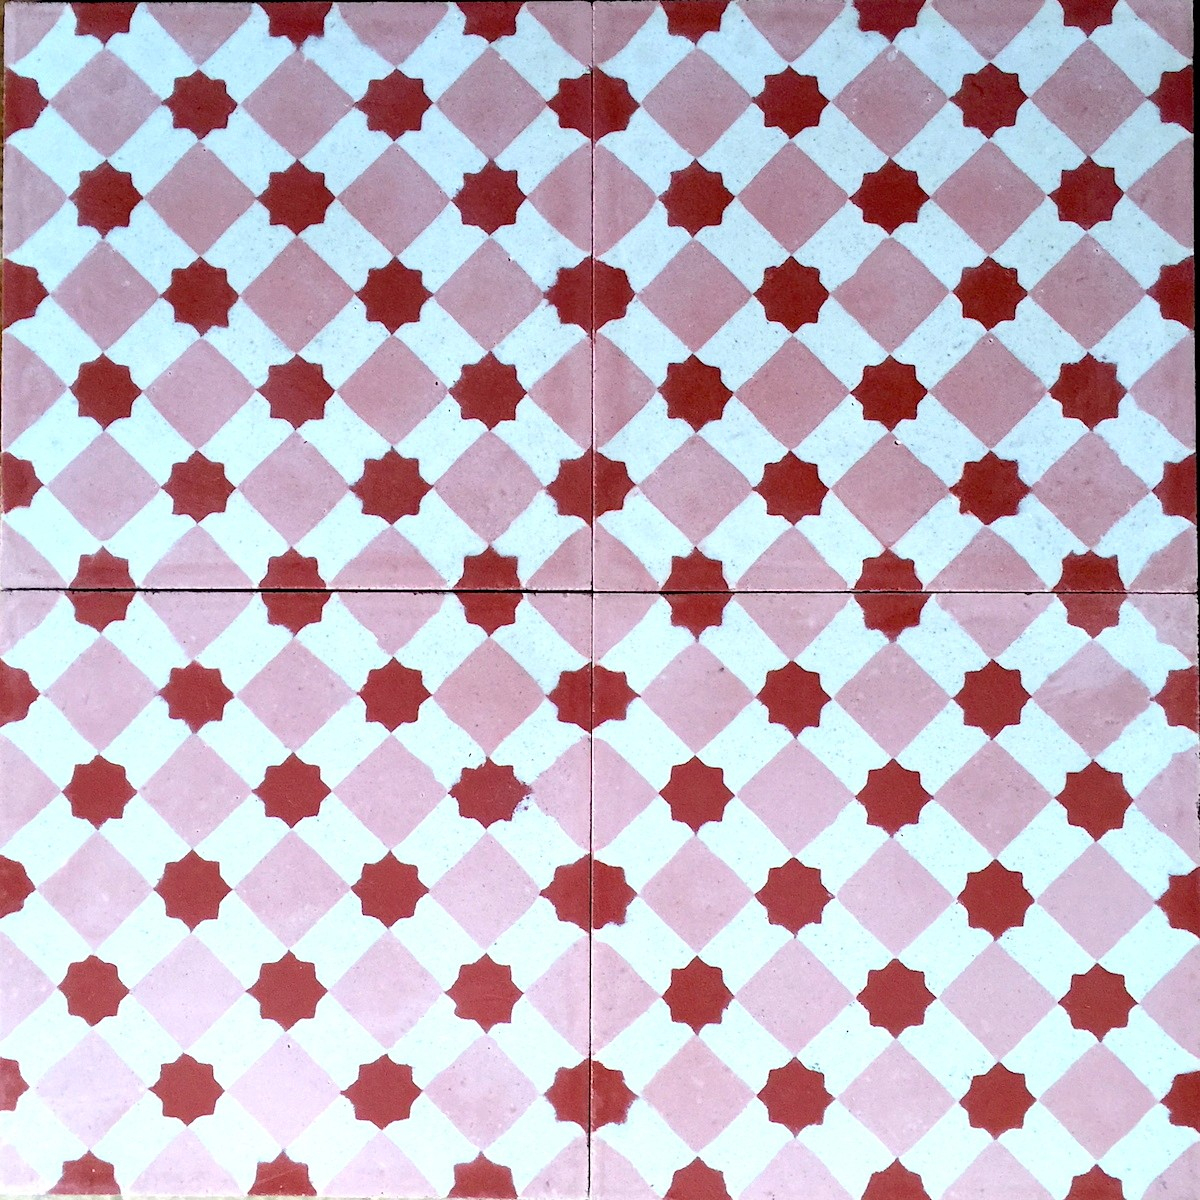 Carreaux Ciment Pas Cher Sol Et Mur 1M2 Modele Frizy-Rouge -  Carrelage-Mosaique à Carreaux De Ciment Pas Cher